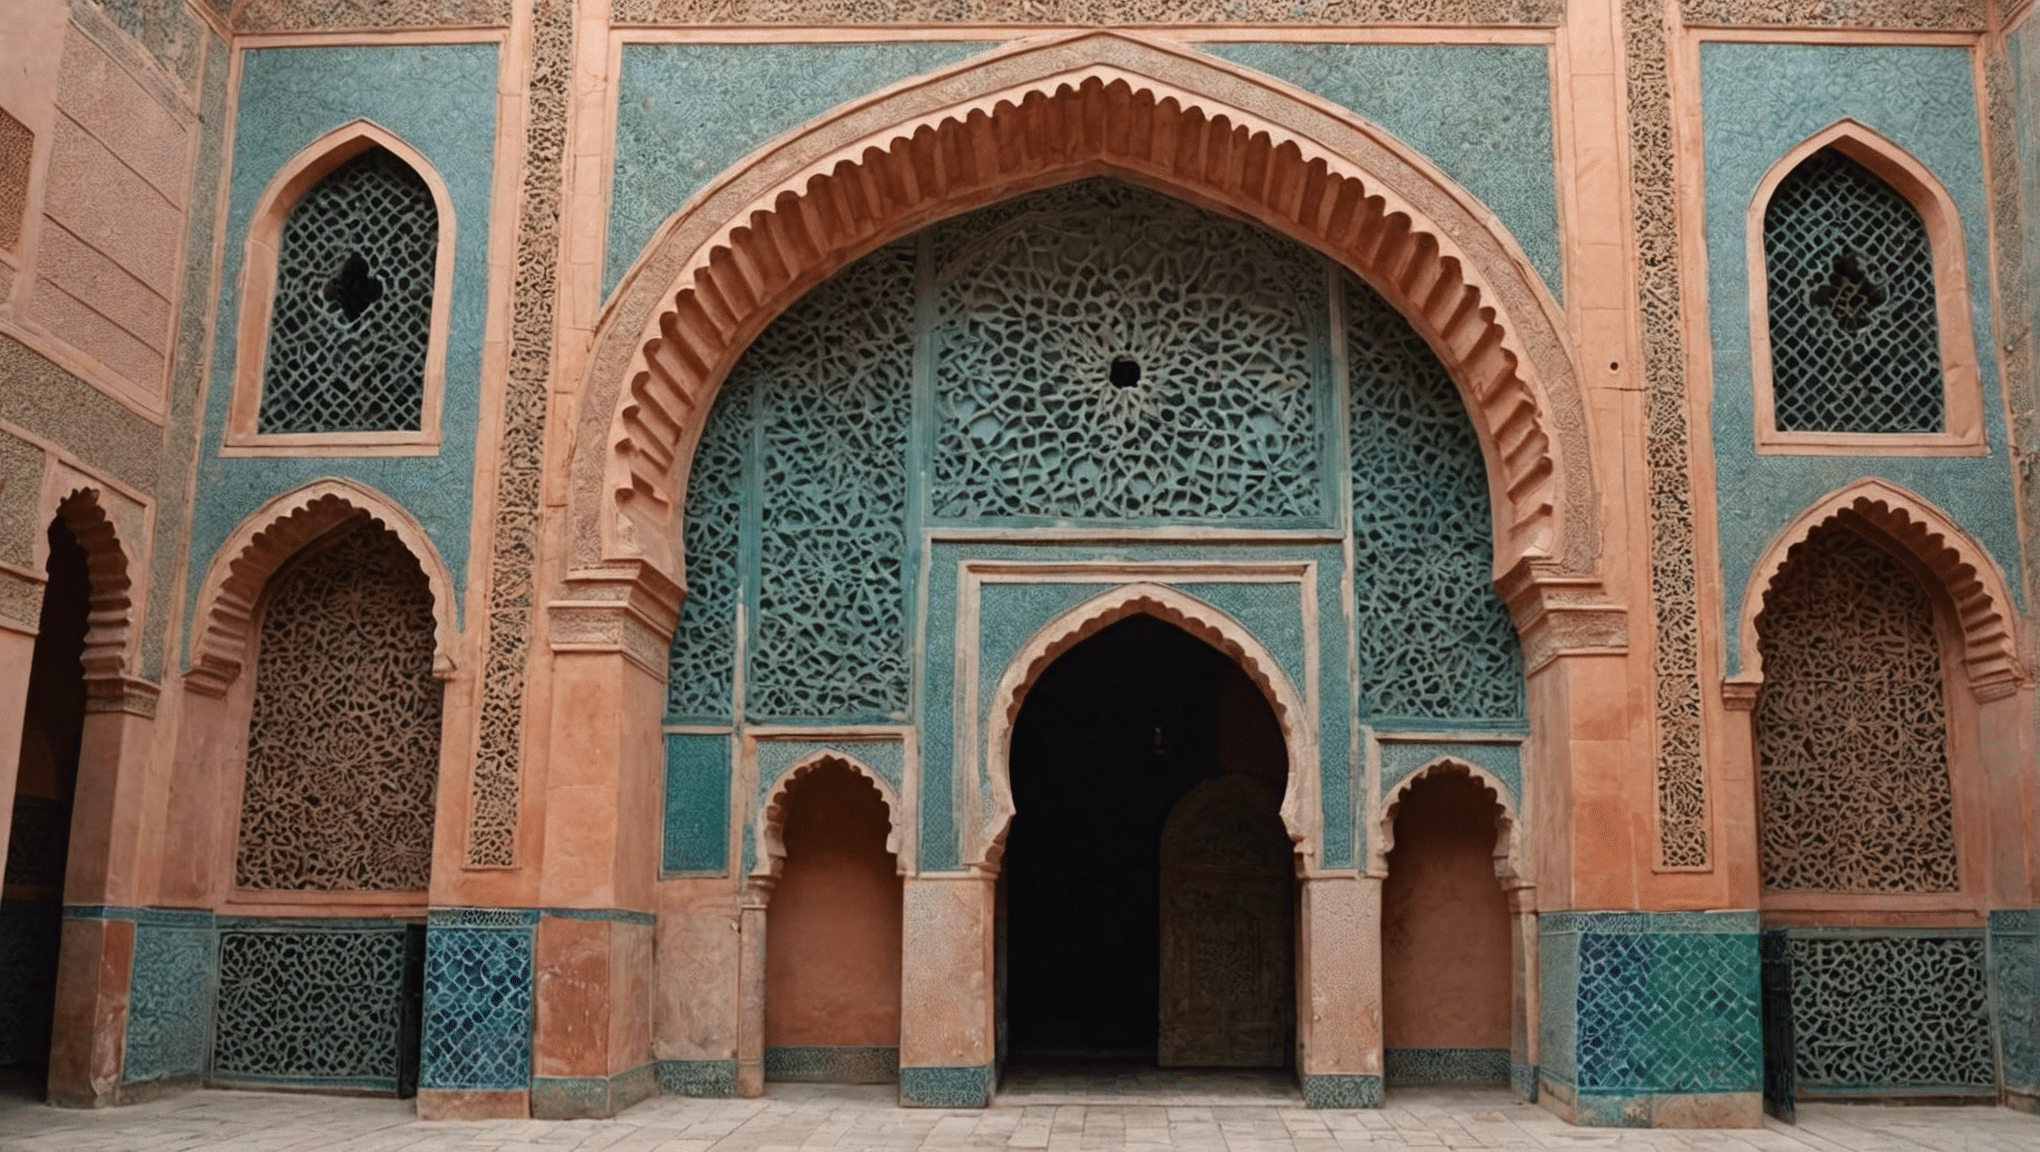 Entdecken Sie den Eintrittspreis für die Saadier-Gräber und machen Sie das Beste aus Ihrem Besuch dieser historischen Stätte in Marrakesch.